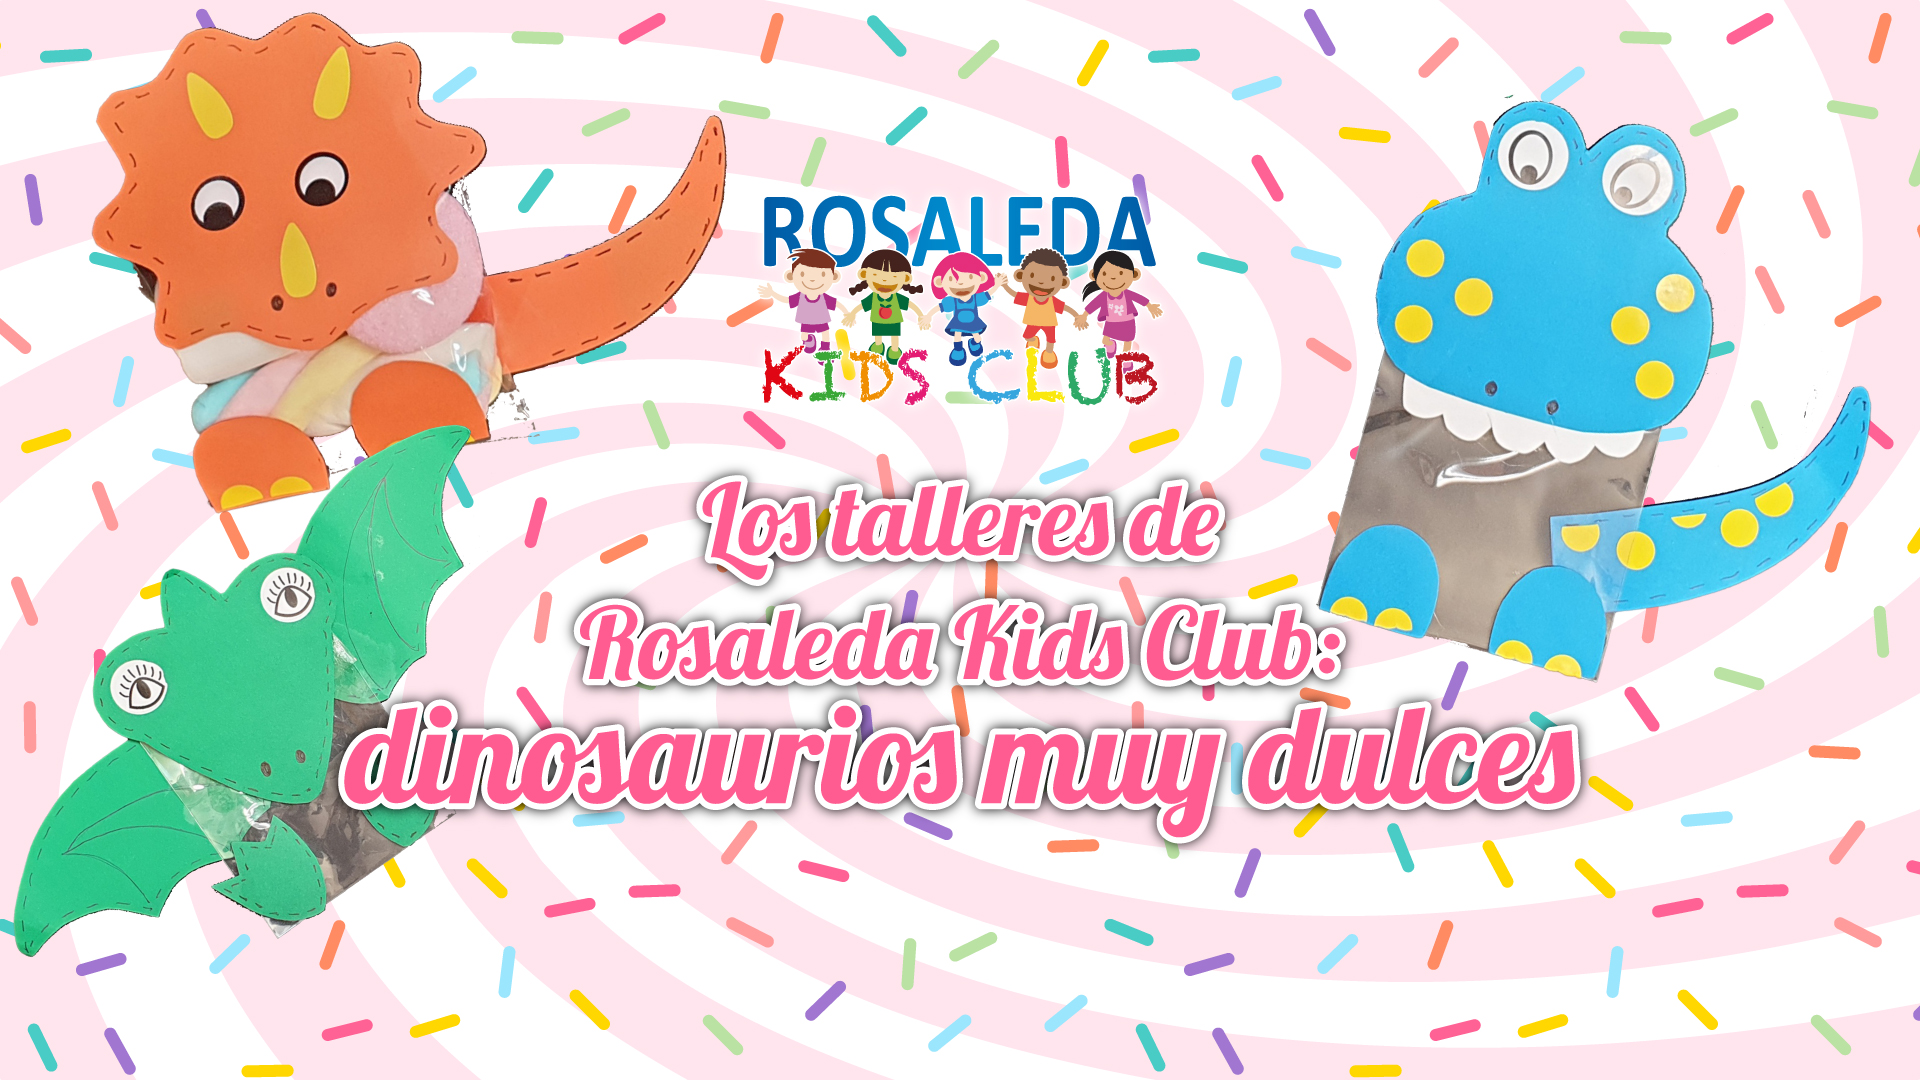 Los talleres de Rosaleda Kids Club: dinosaurios muy dulces